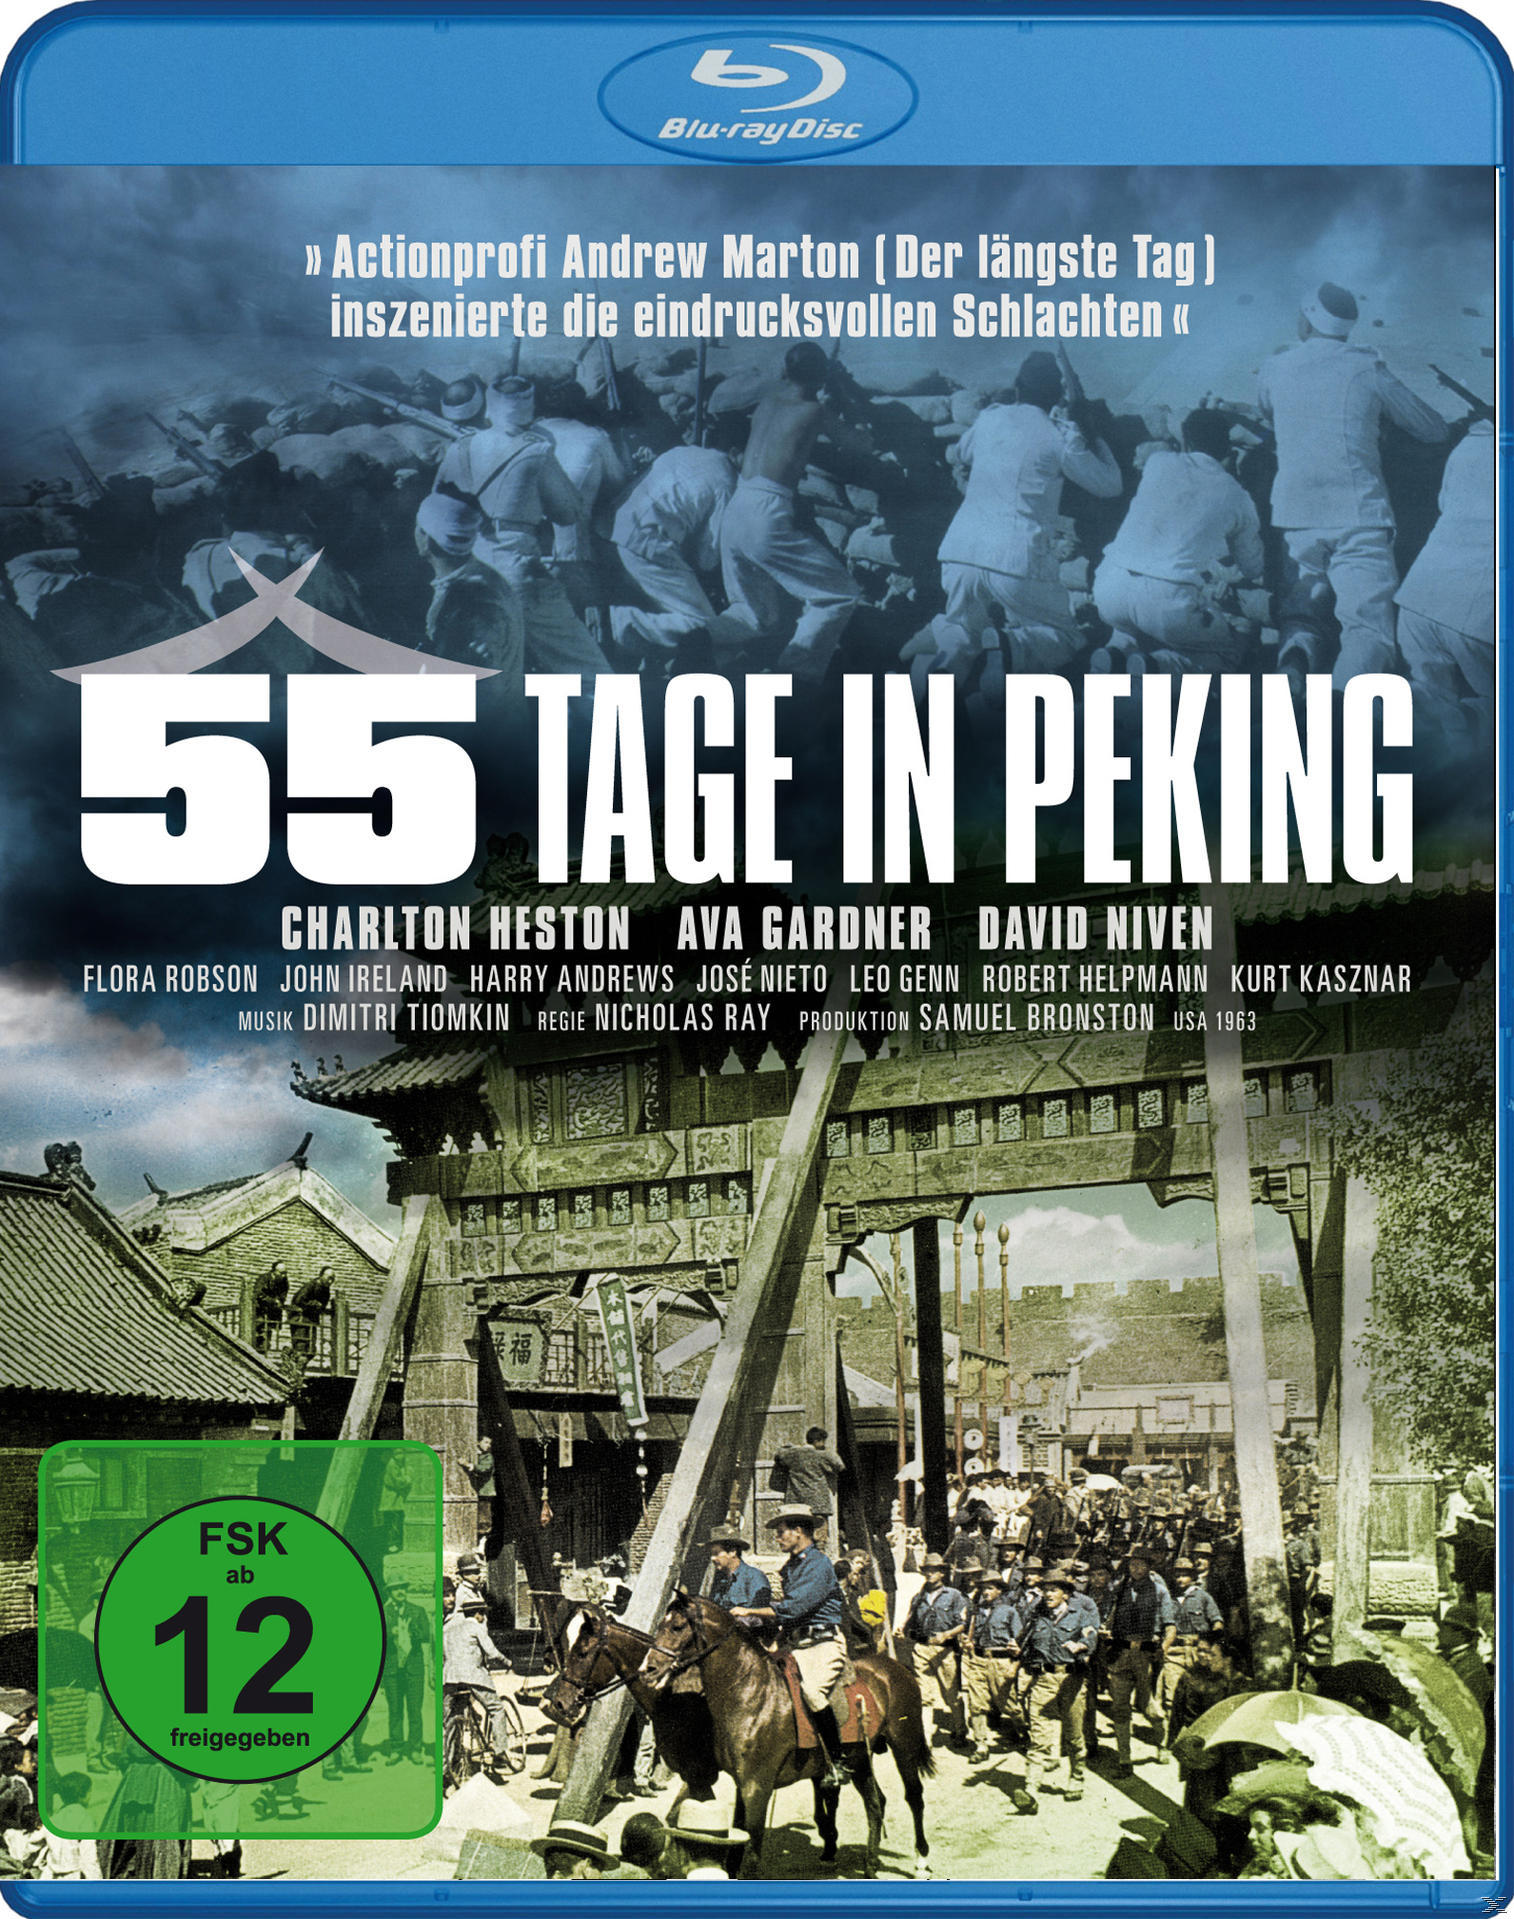 Peking Blu-ray 55 in Tage